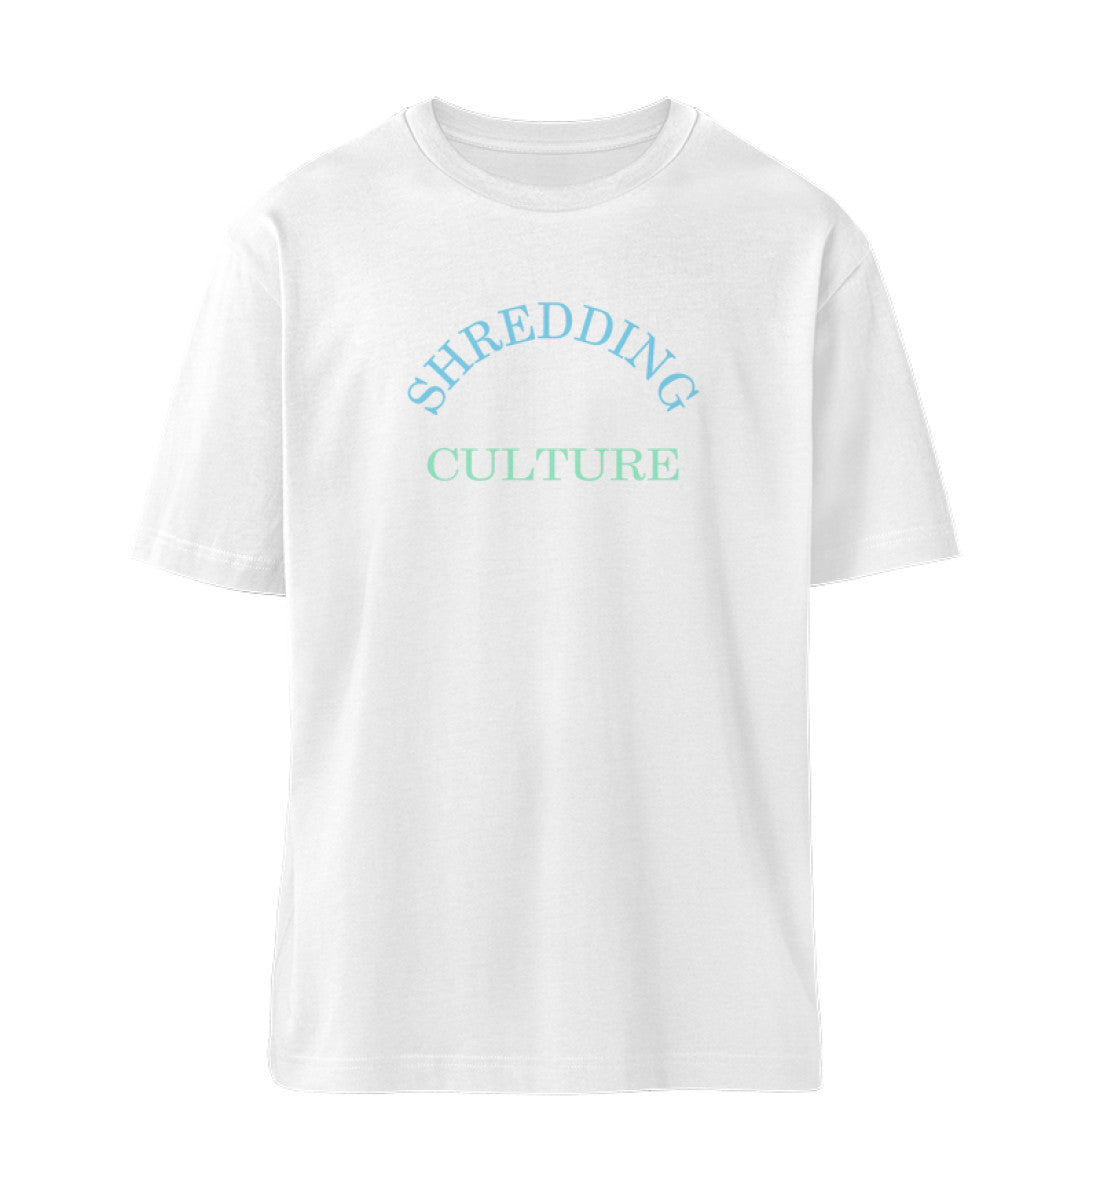 Weißes T-Shirt Unisex Relaxed Fit für Damen und Herren bedruckt mit dem Design der Roger Rockawoo Kollektion Mountainbike Shredding Culture Community